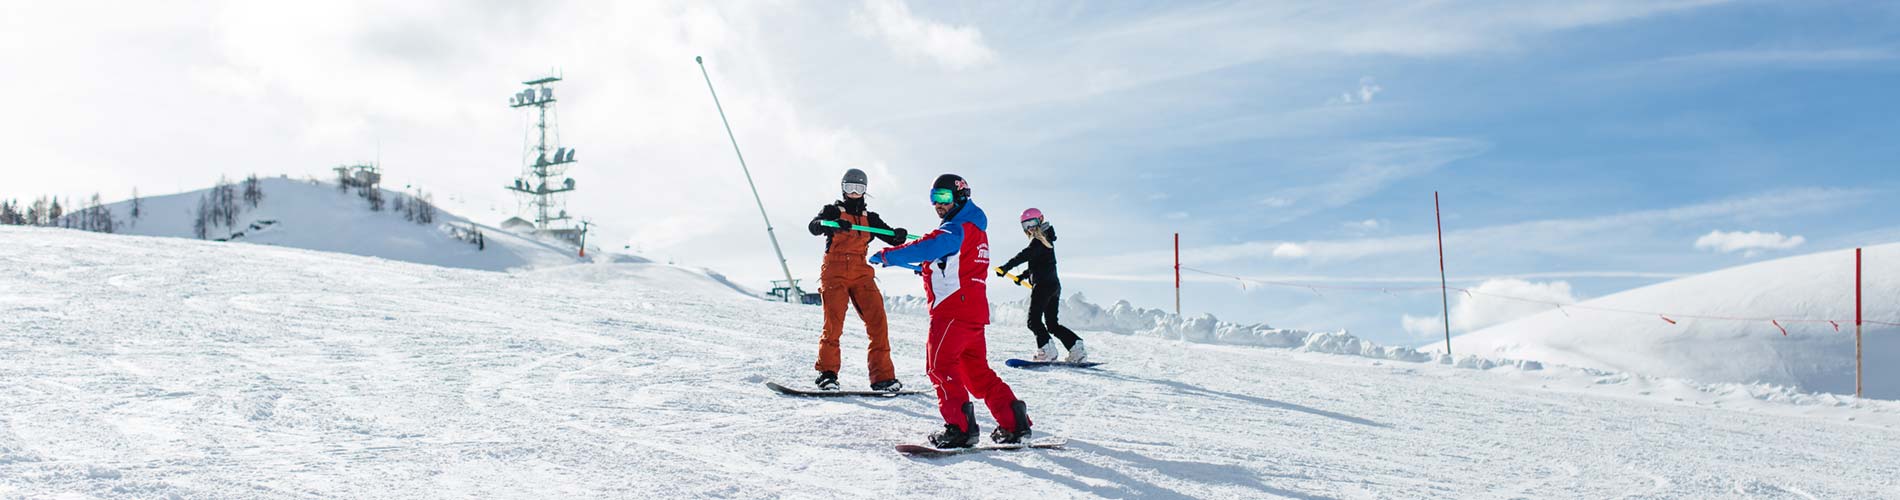 Skischule Lofer 3